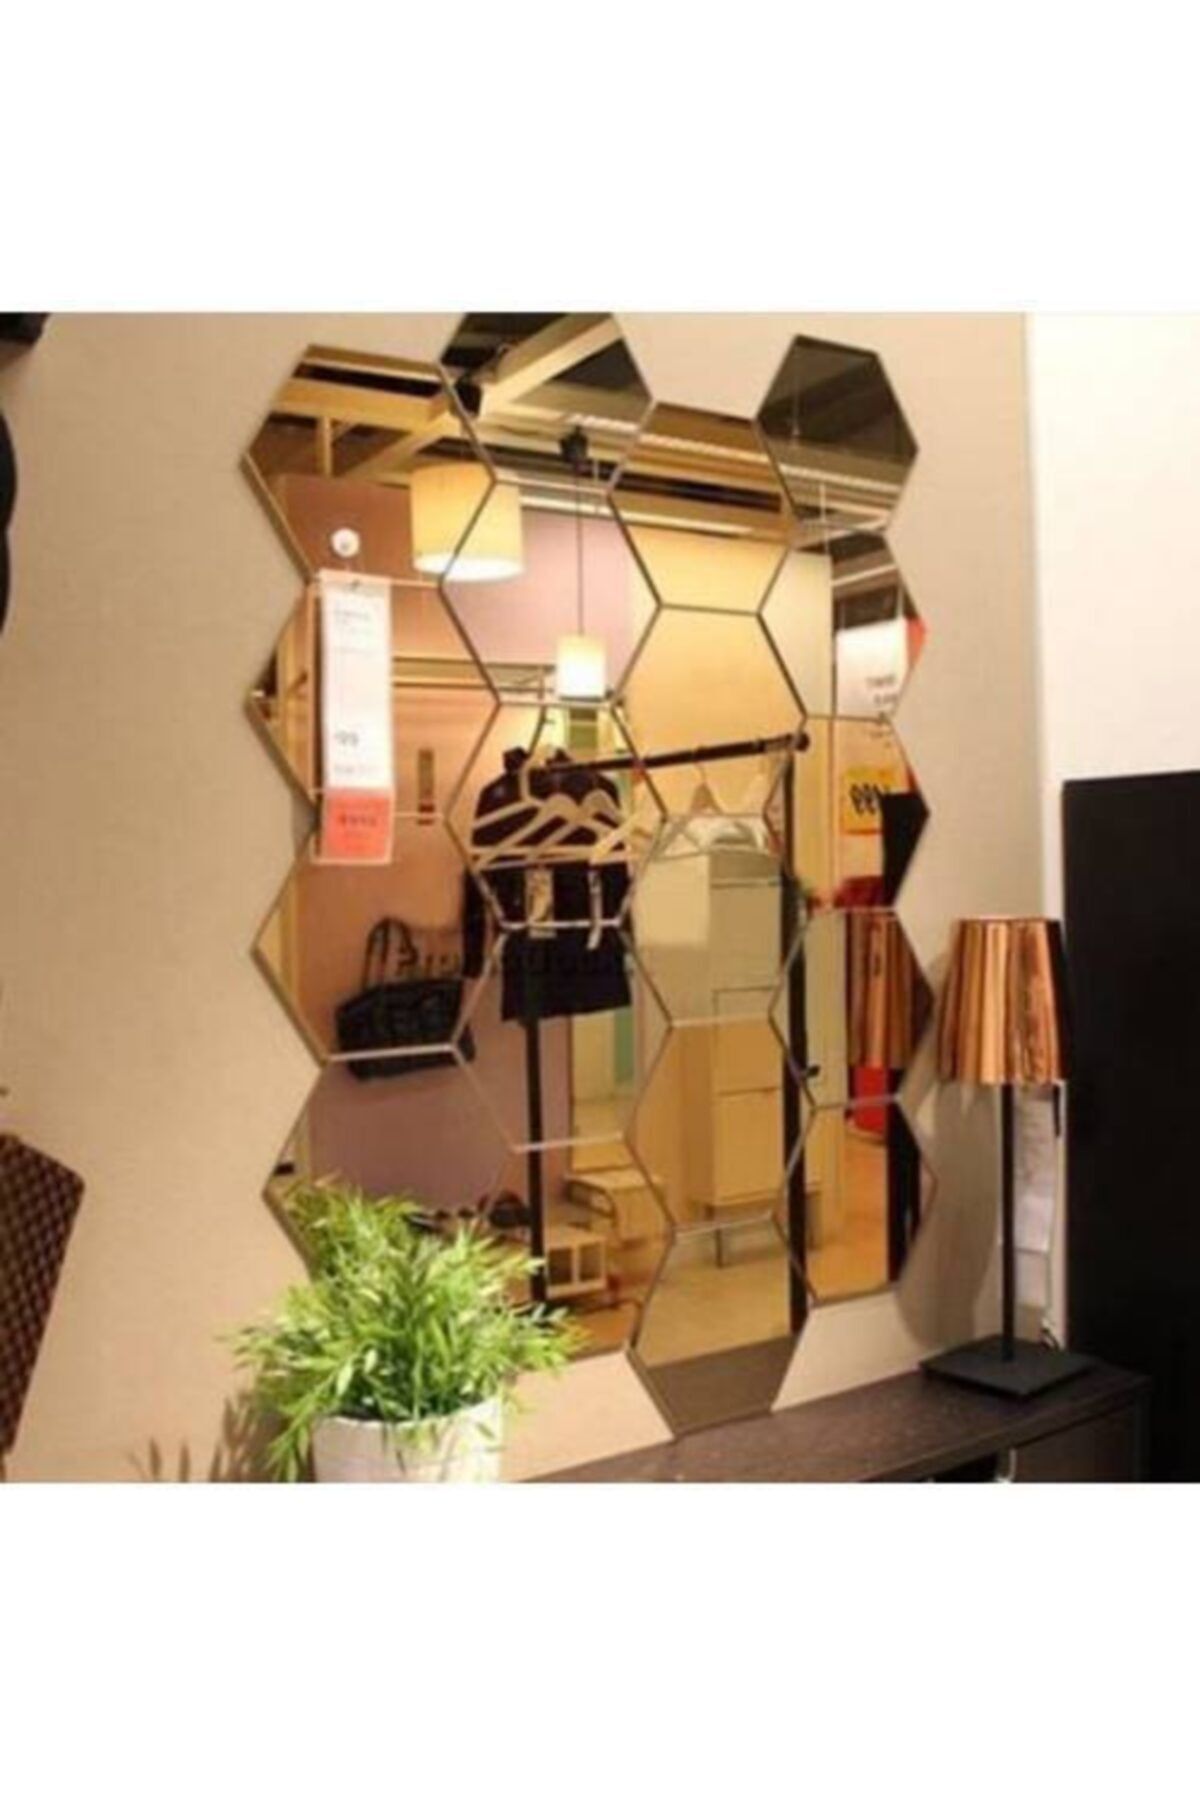 Acrylic Mirror Hexagon